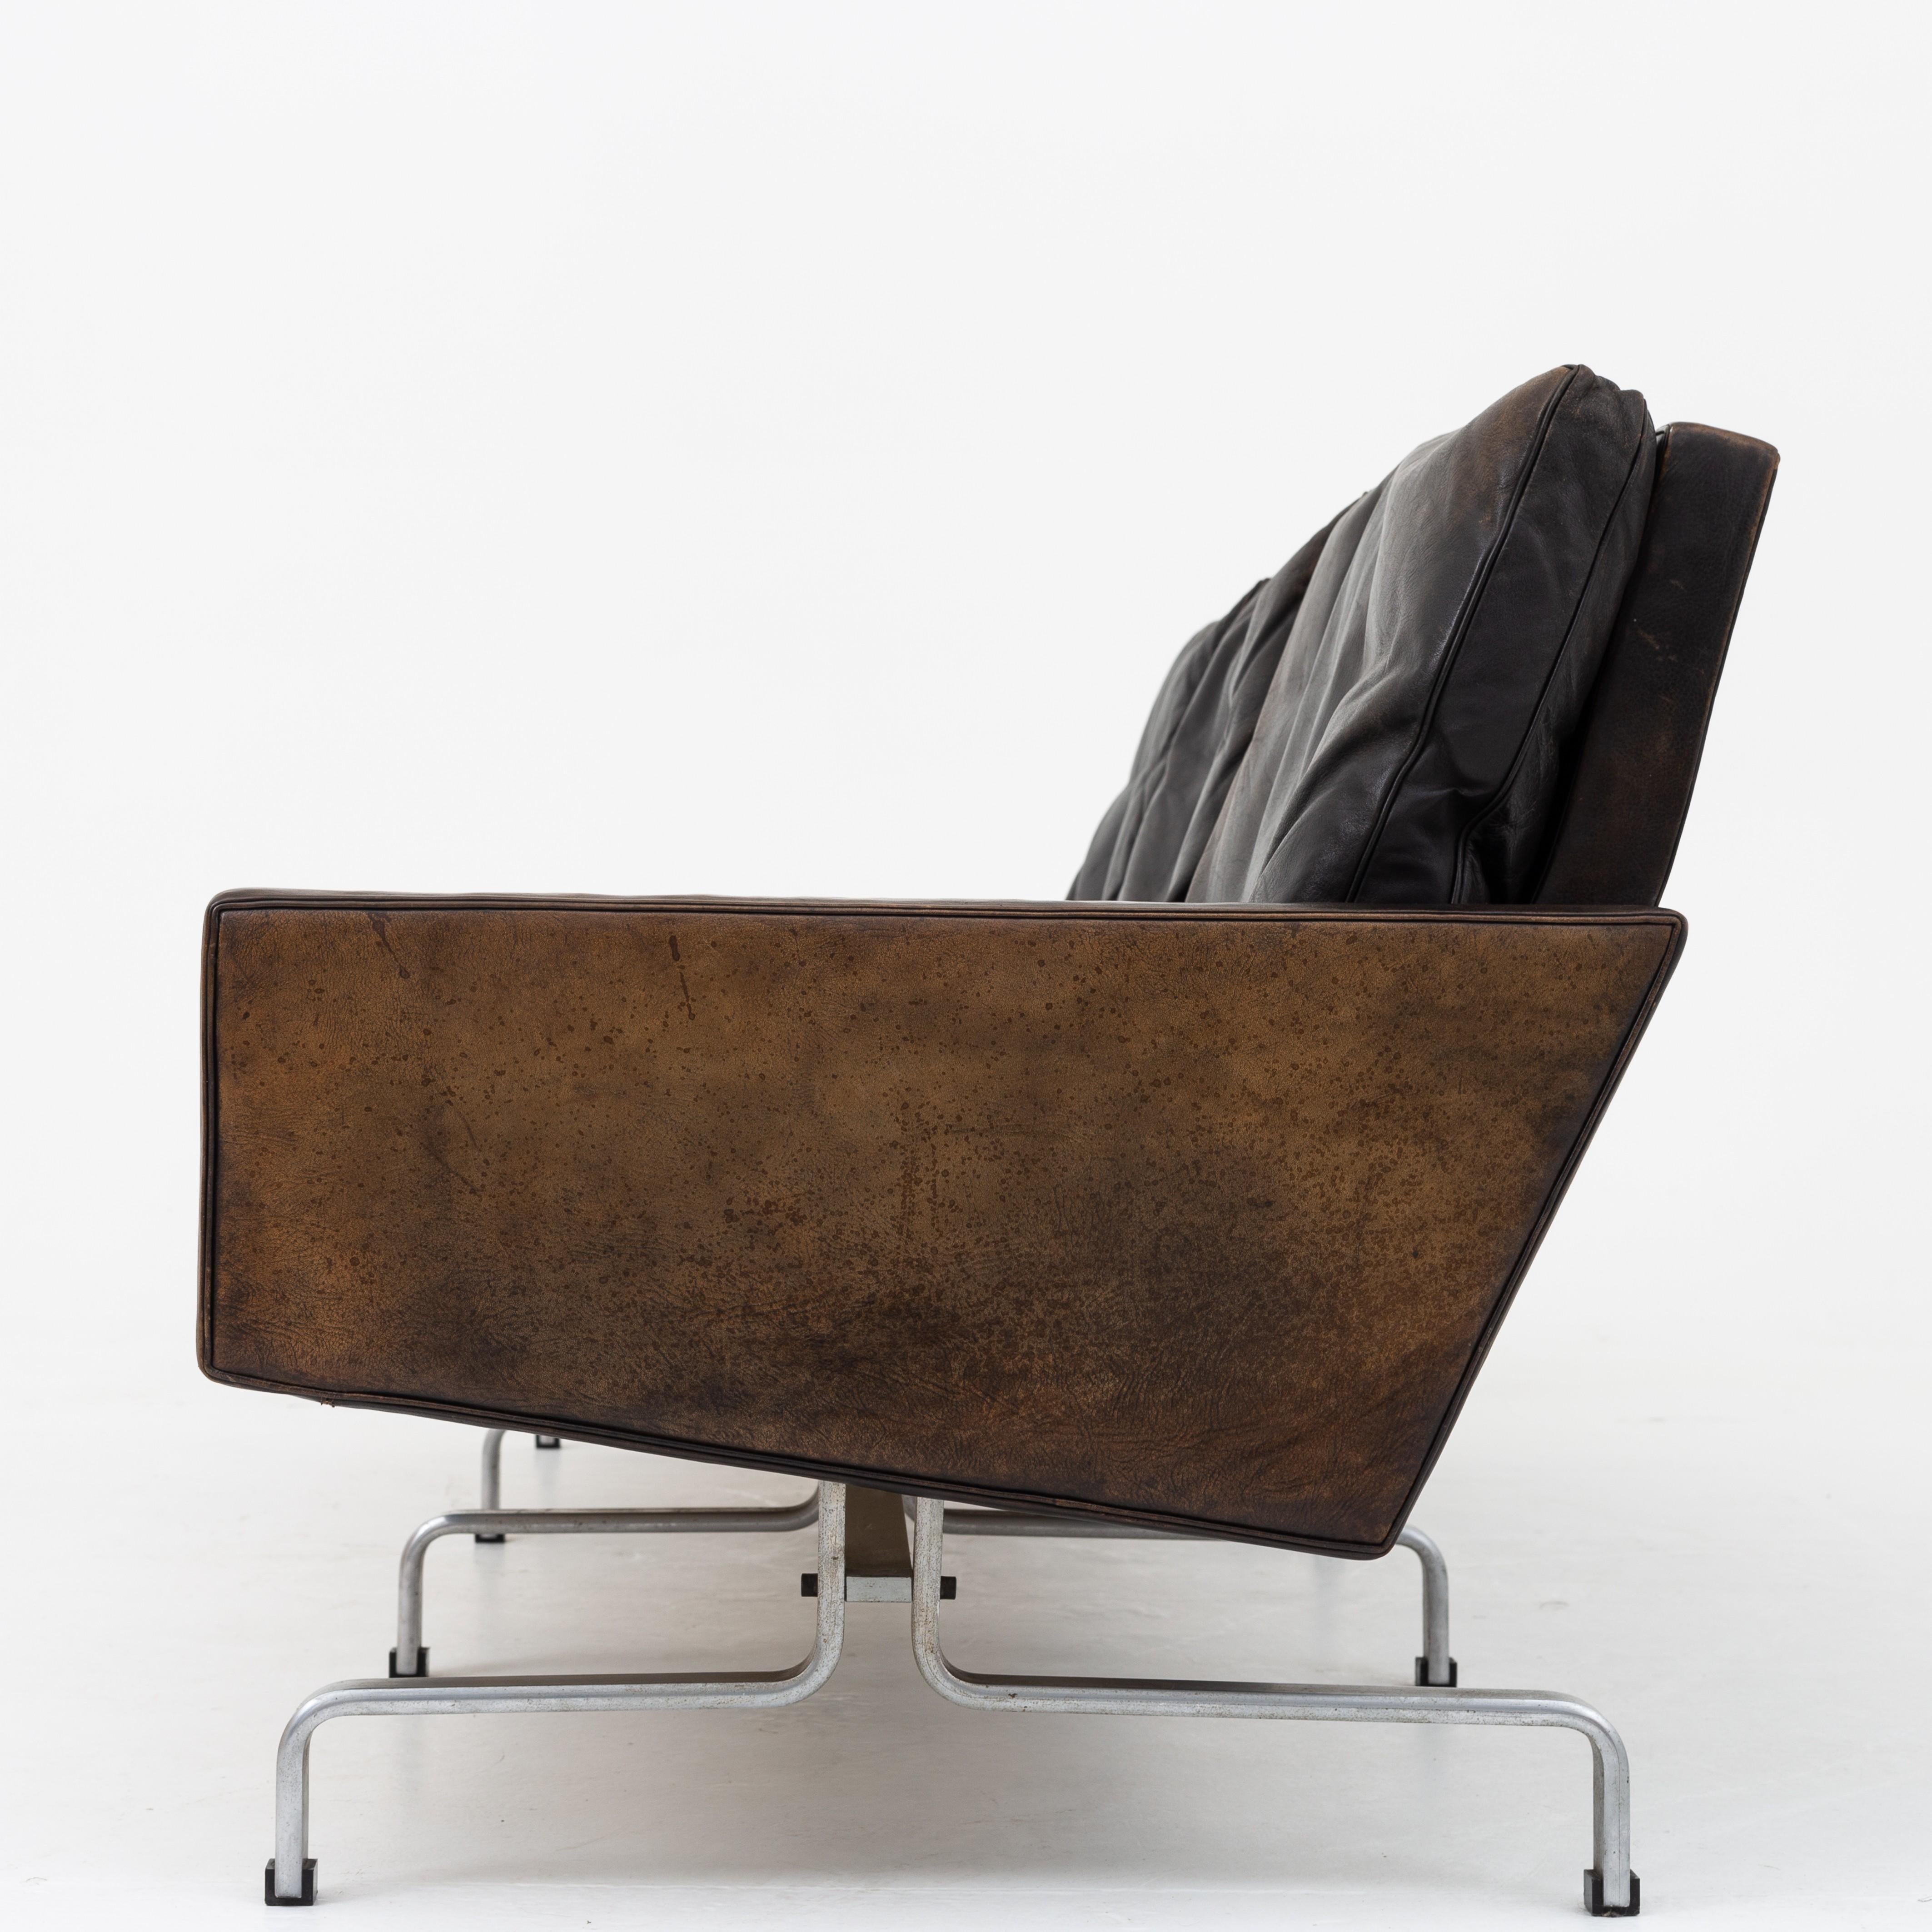 PK 31/3 - 3-seat sofa in original black leather with matte chromed steel frame. Designed in 1958. Maker E. Kold Christensen.